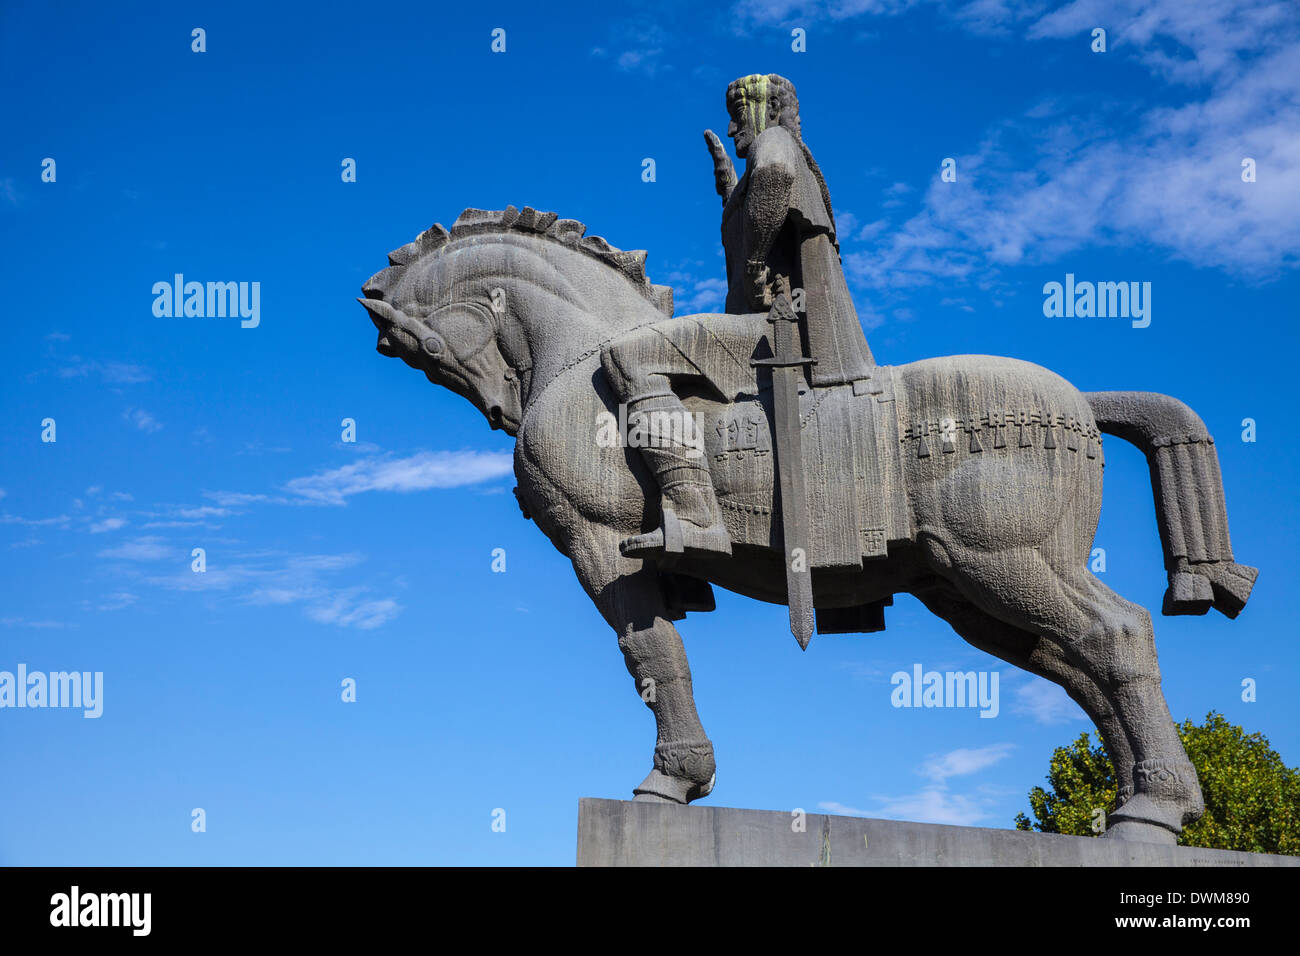 Avlabari, statua equestre del re Vakhtang Gorgasali accanto alla Chiesa di Metekhi, Tbilisi, Georgia, nel Caucaso e in Asia Centrale, Asia Foto Stock